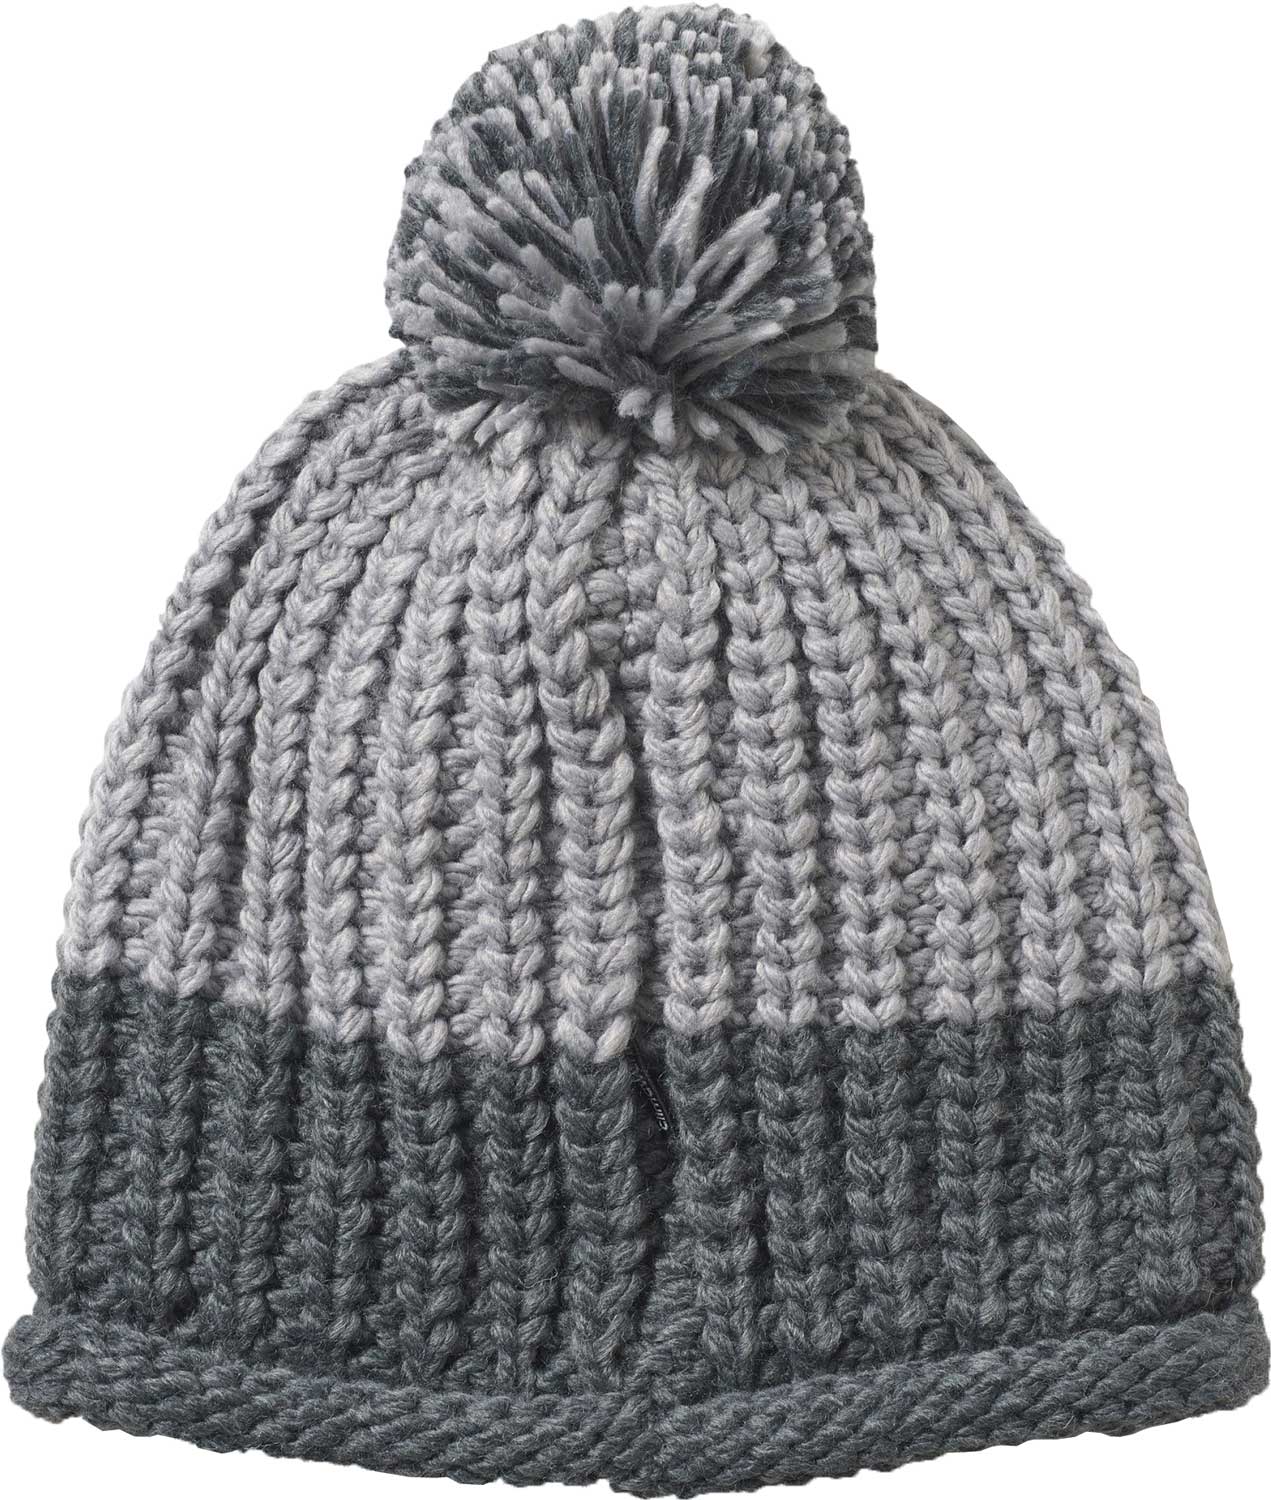 Women’s winter hat